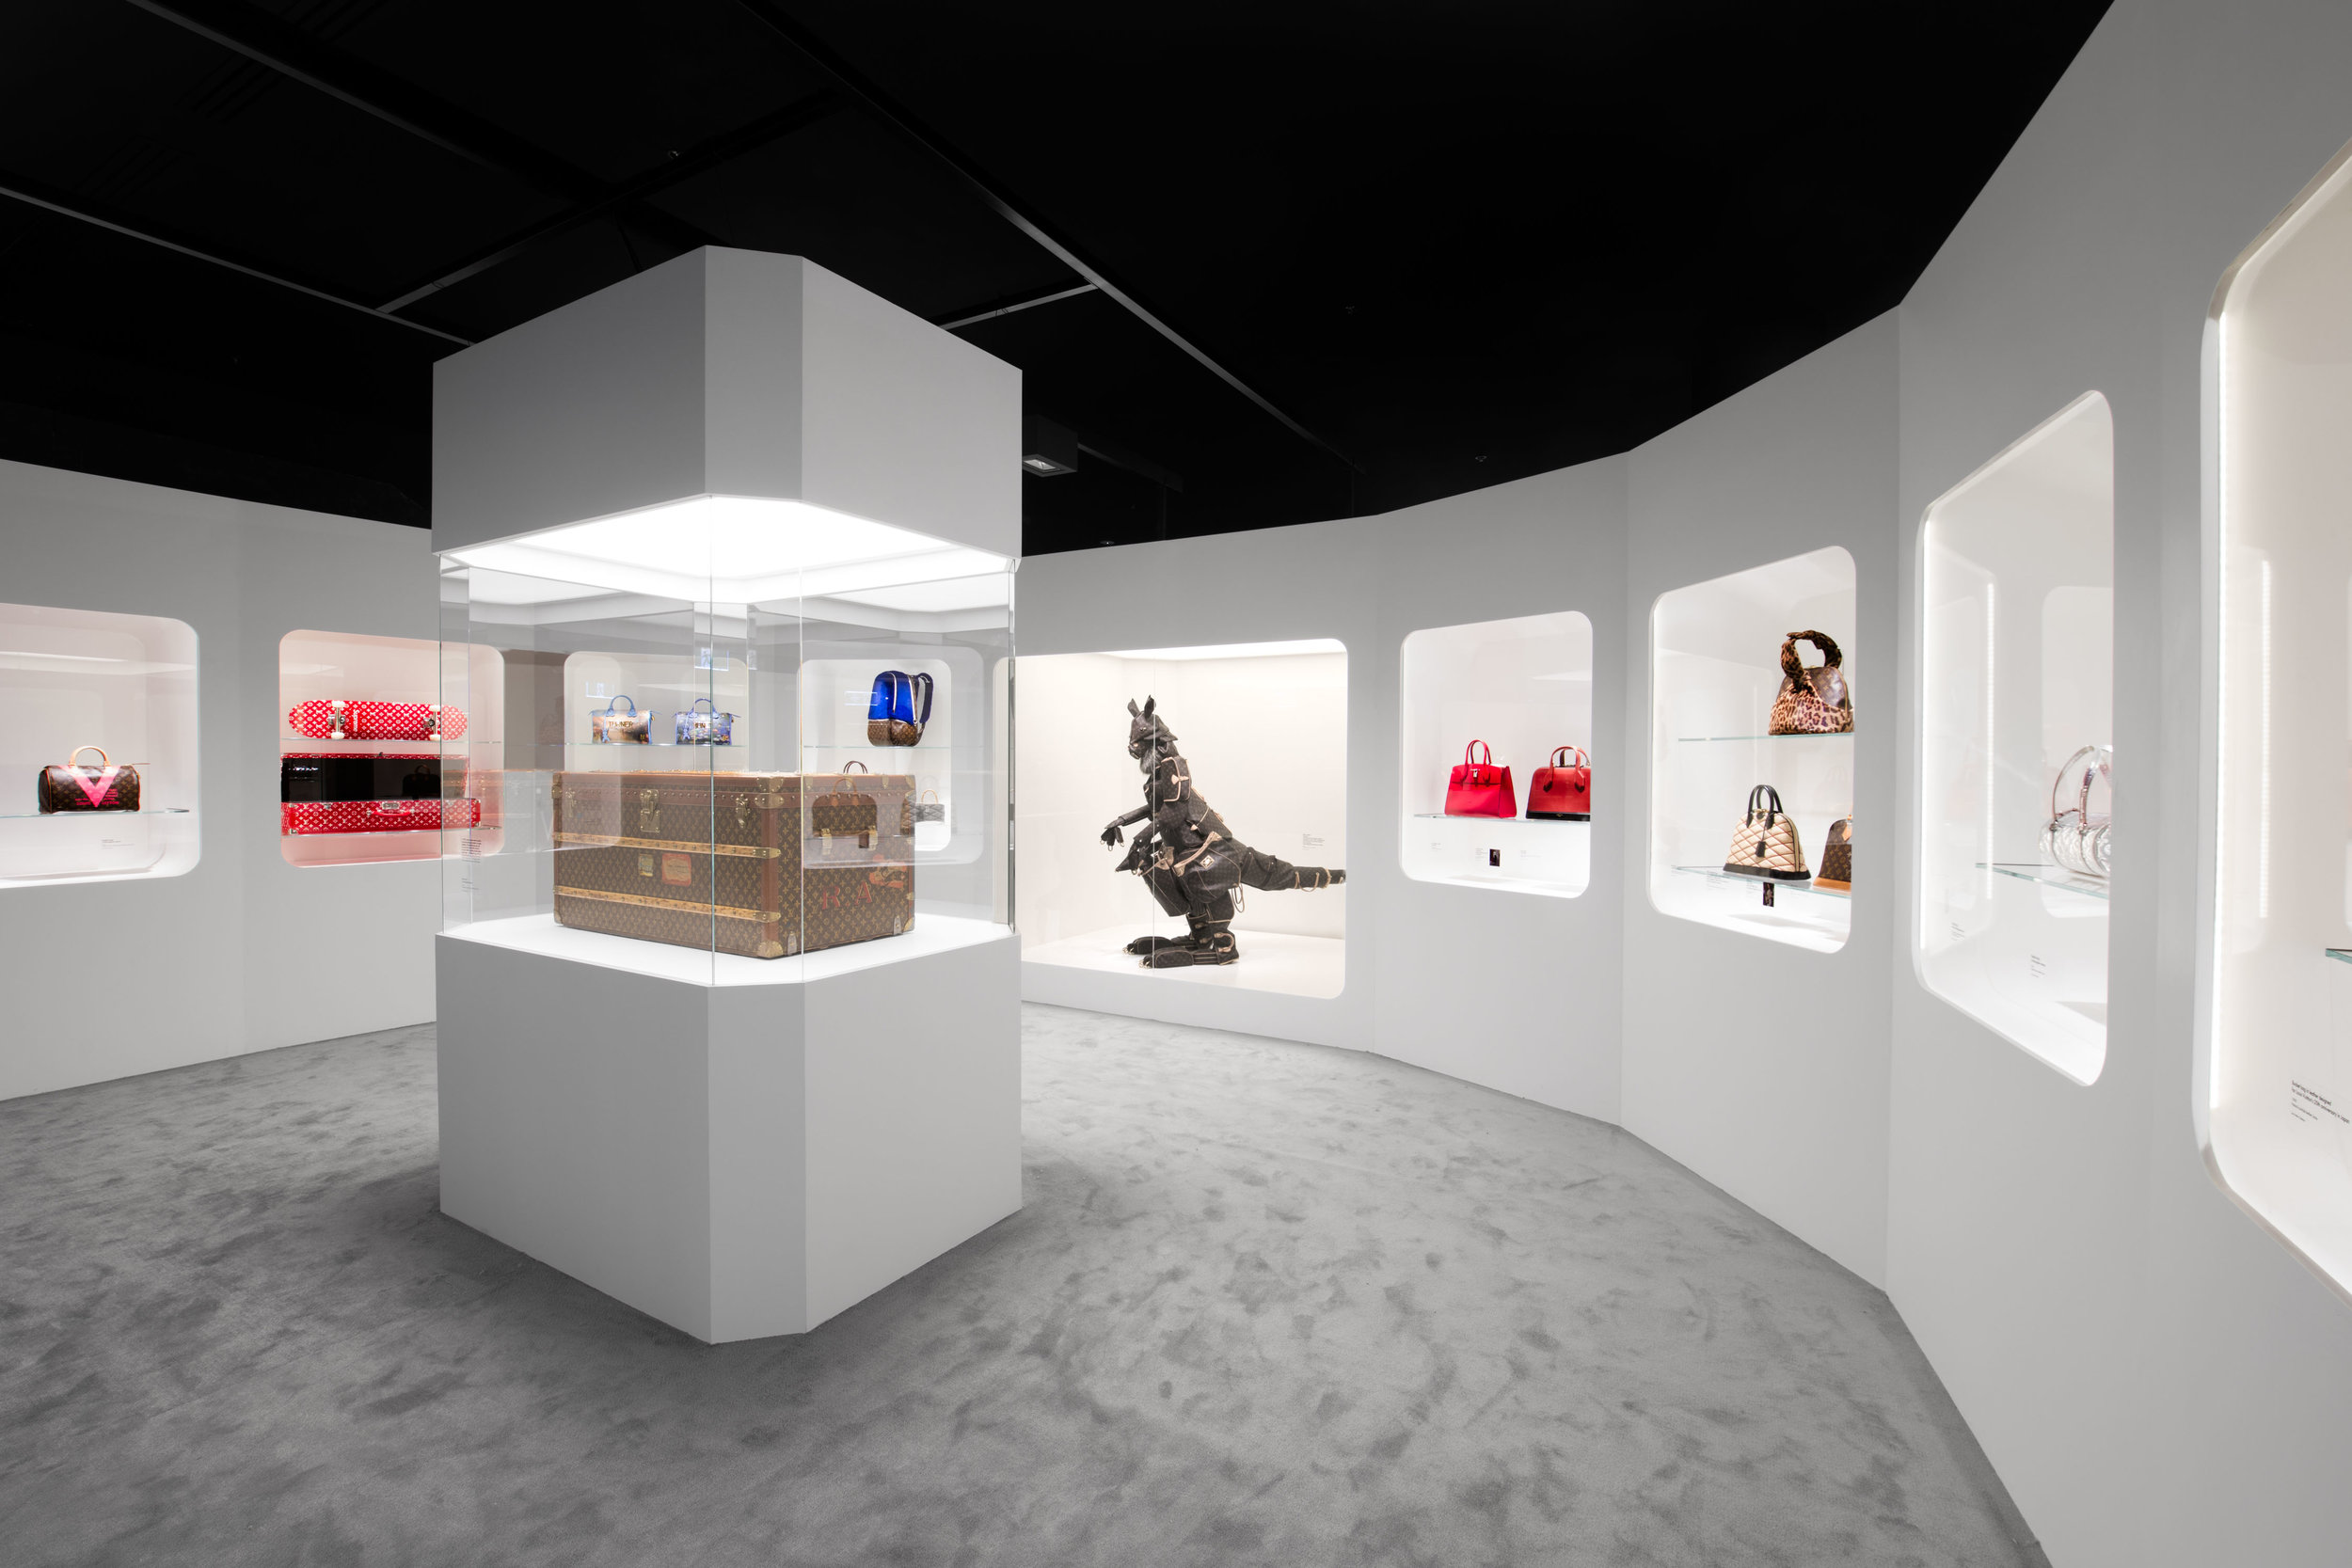 Louis Vuitton - Time Capsule Exhibition